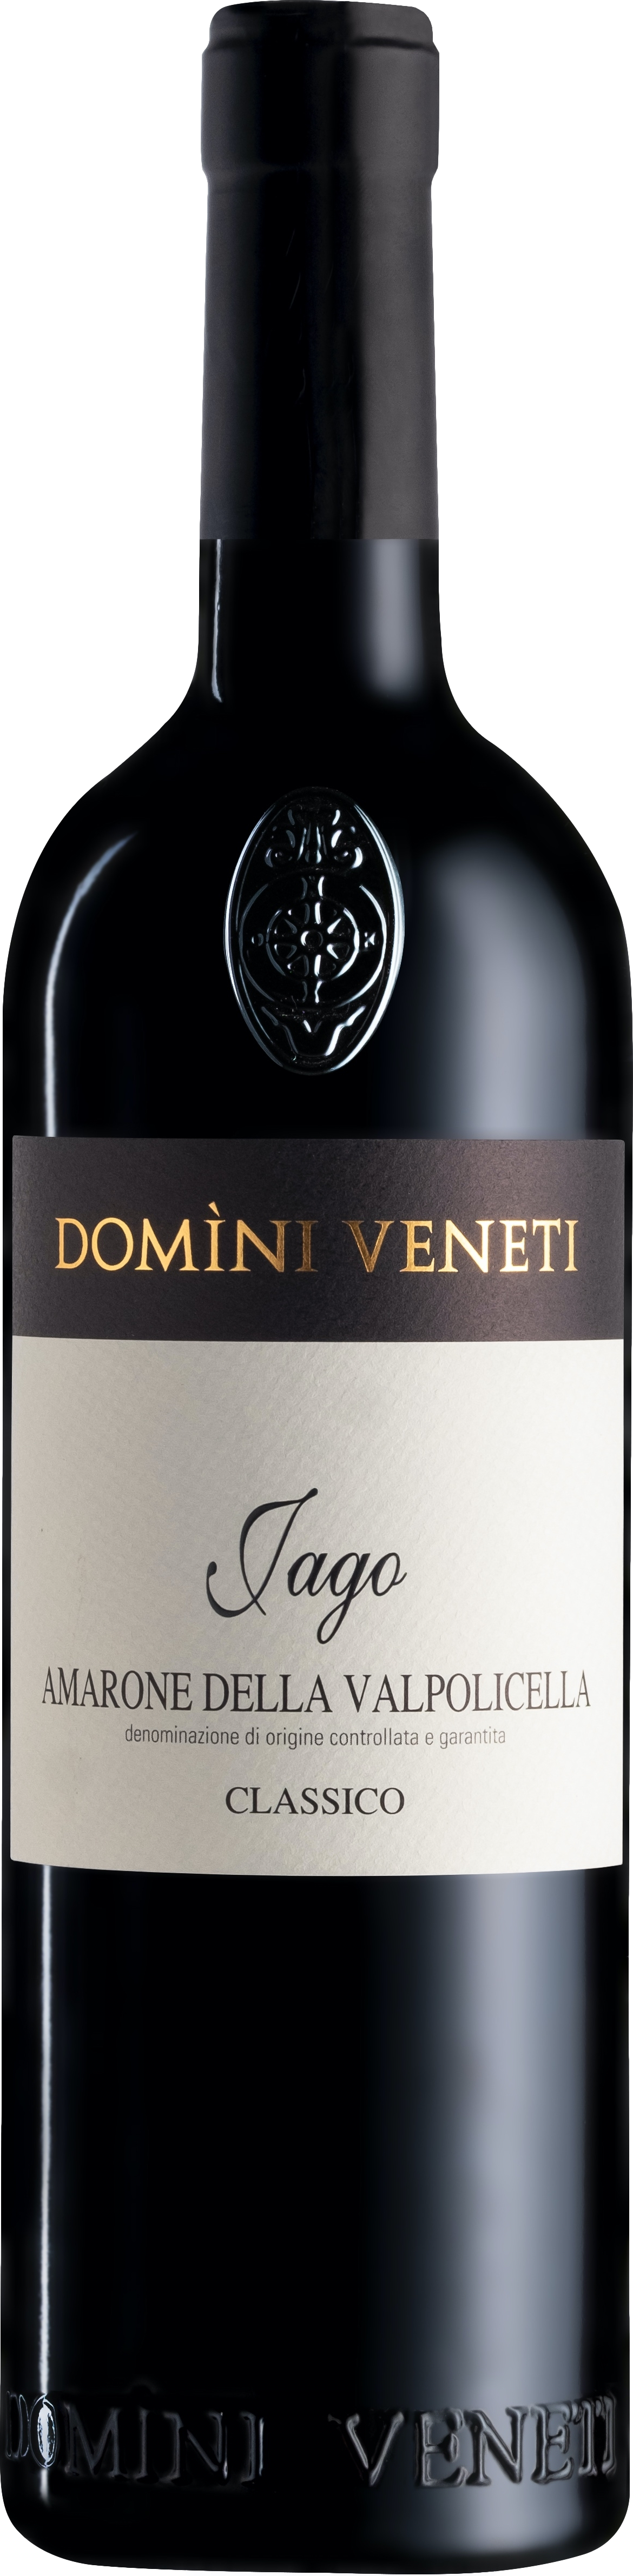 2017 Mini günstig Kaufen-Domini Veneti Vigneti di Jago Amarone della Valpolicella Classico 2017. Domini Veneti Vigneti di Jago Amarone della Valpolicella Classico 2017 . 